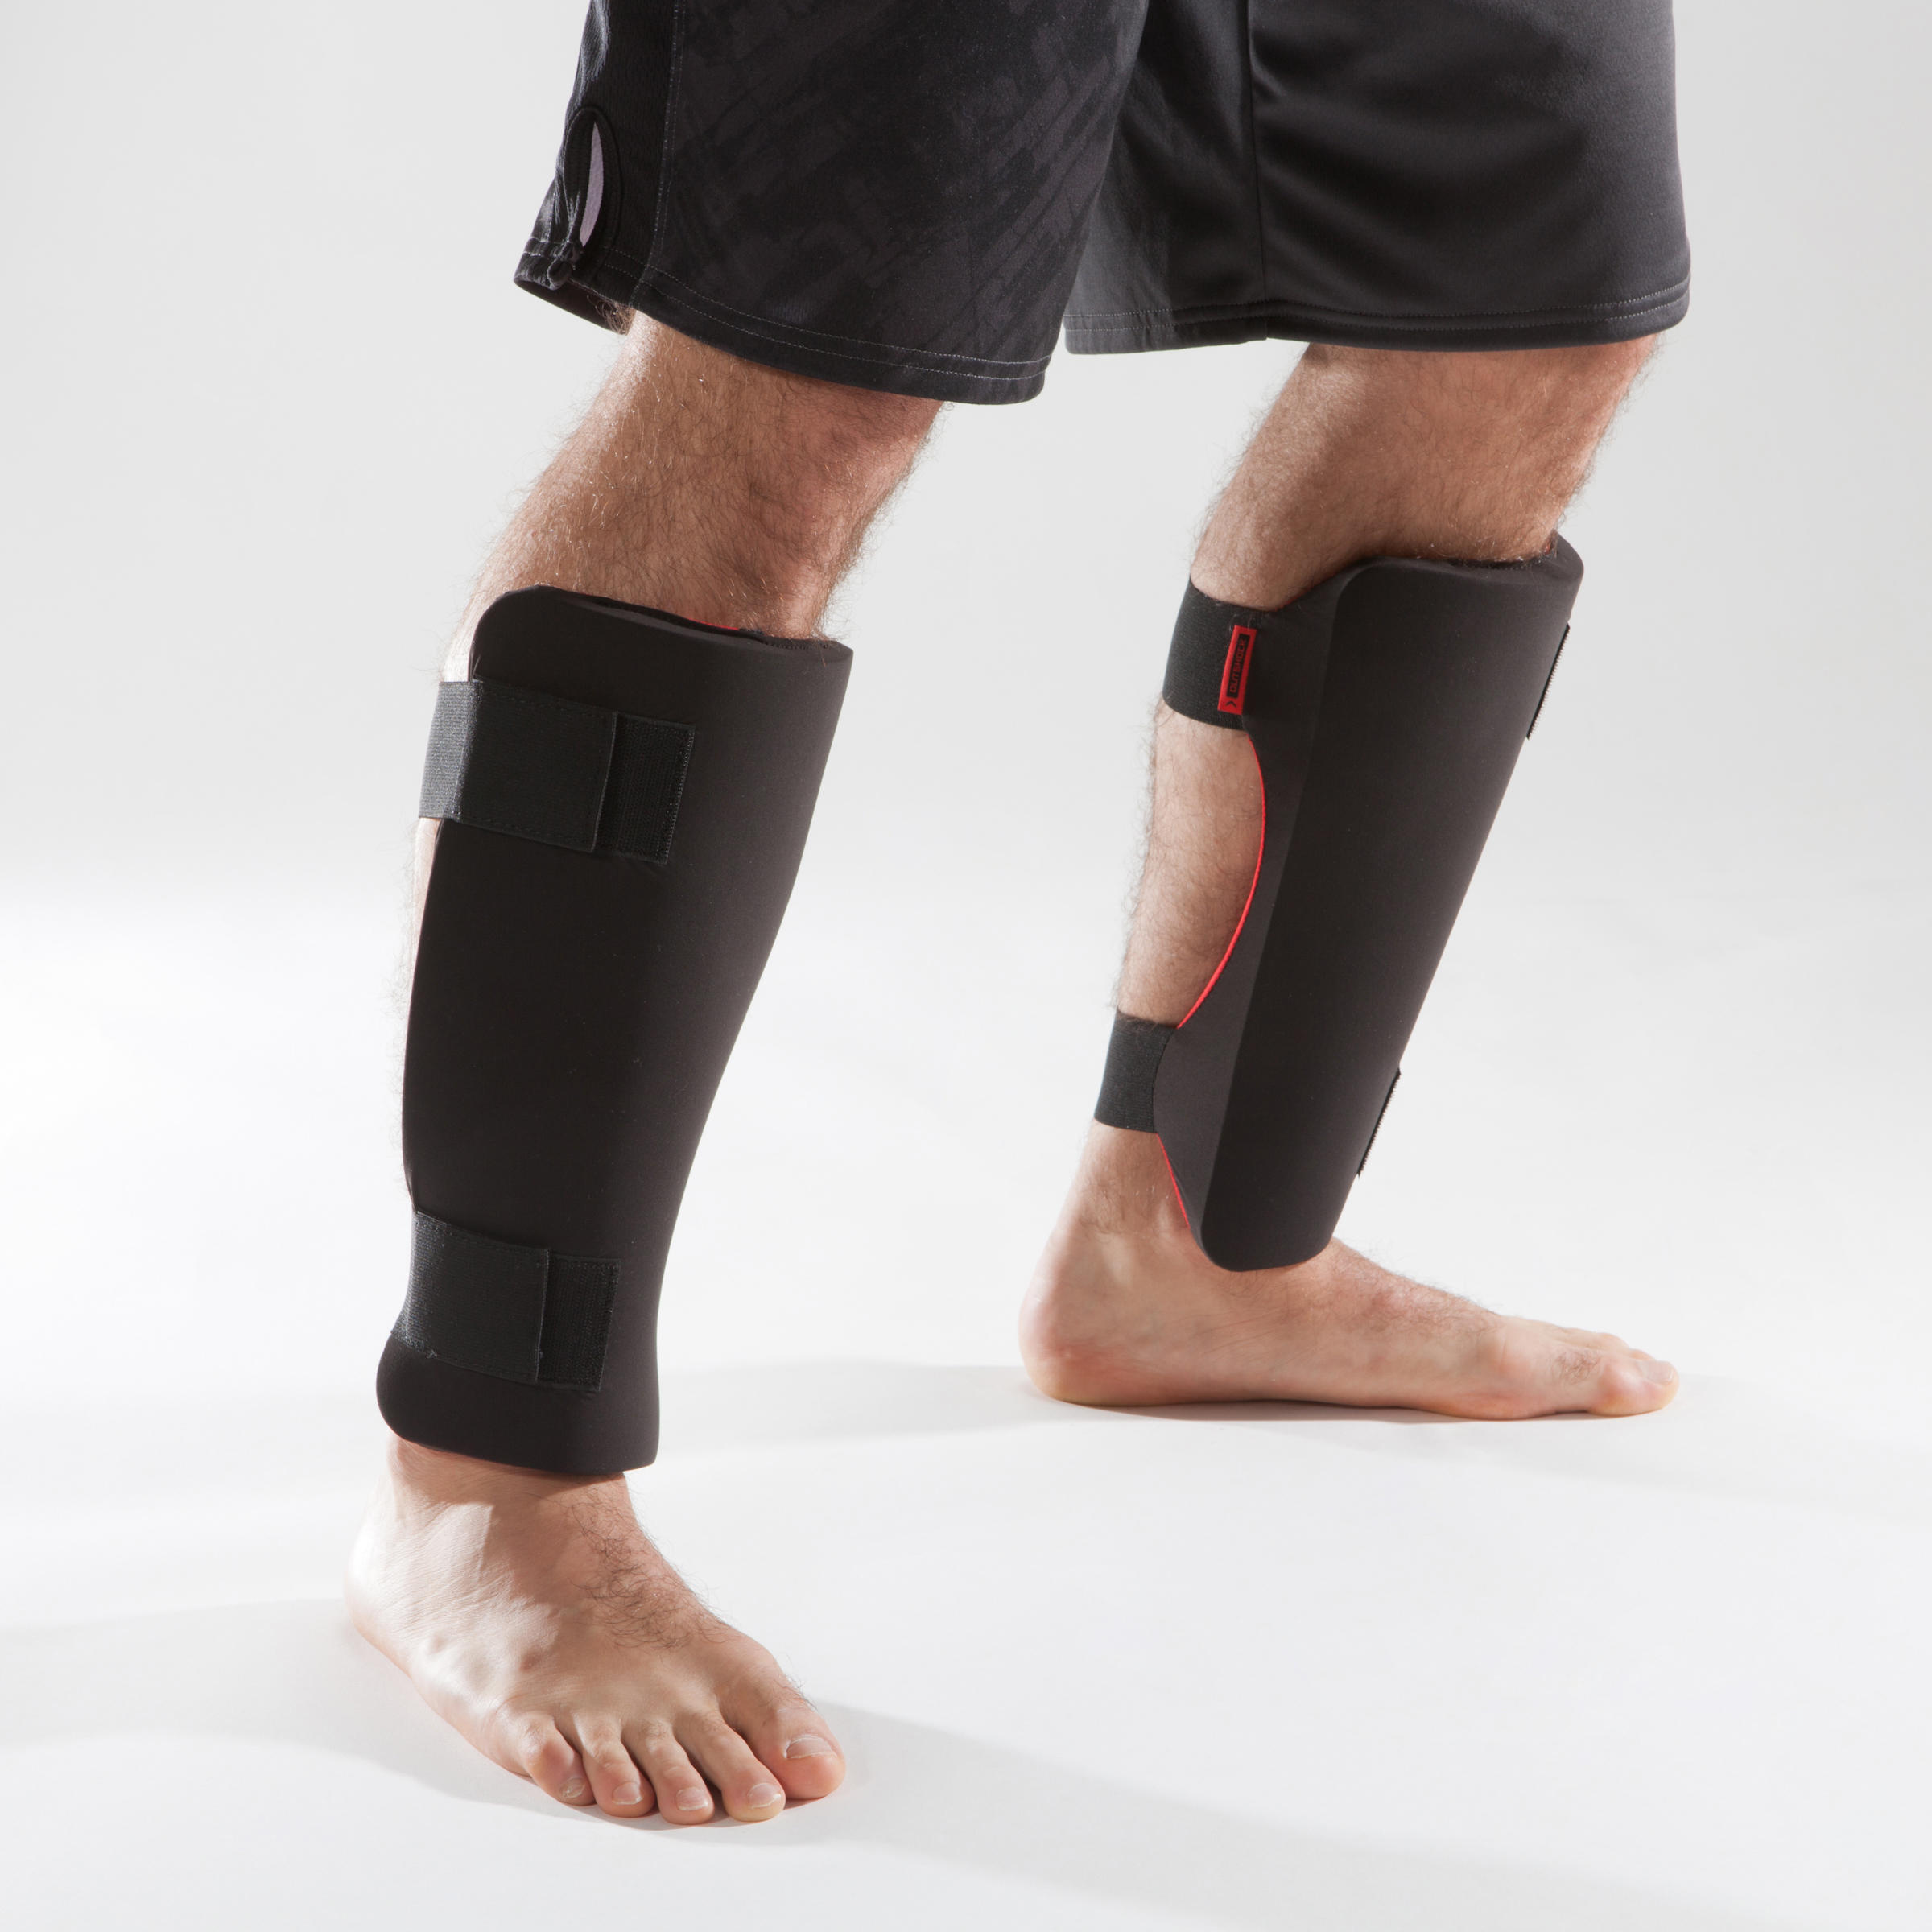 Giáp ống đồng BN PT8755 giúp bảo vệ và hạn chế tối đa chấn thương vùng chân trong khi luyện tập hoặc thi đấu